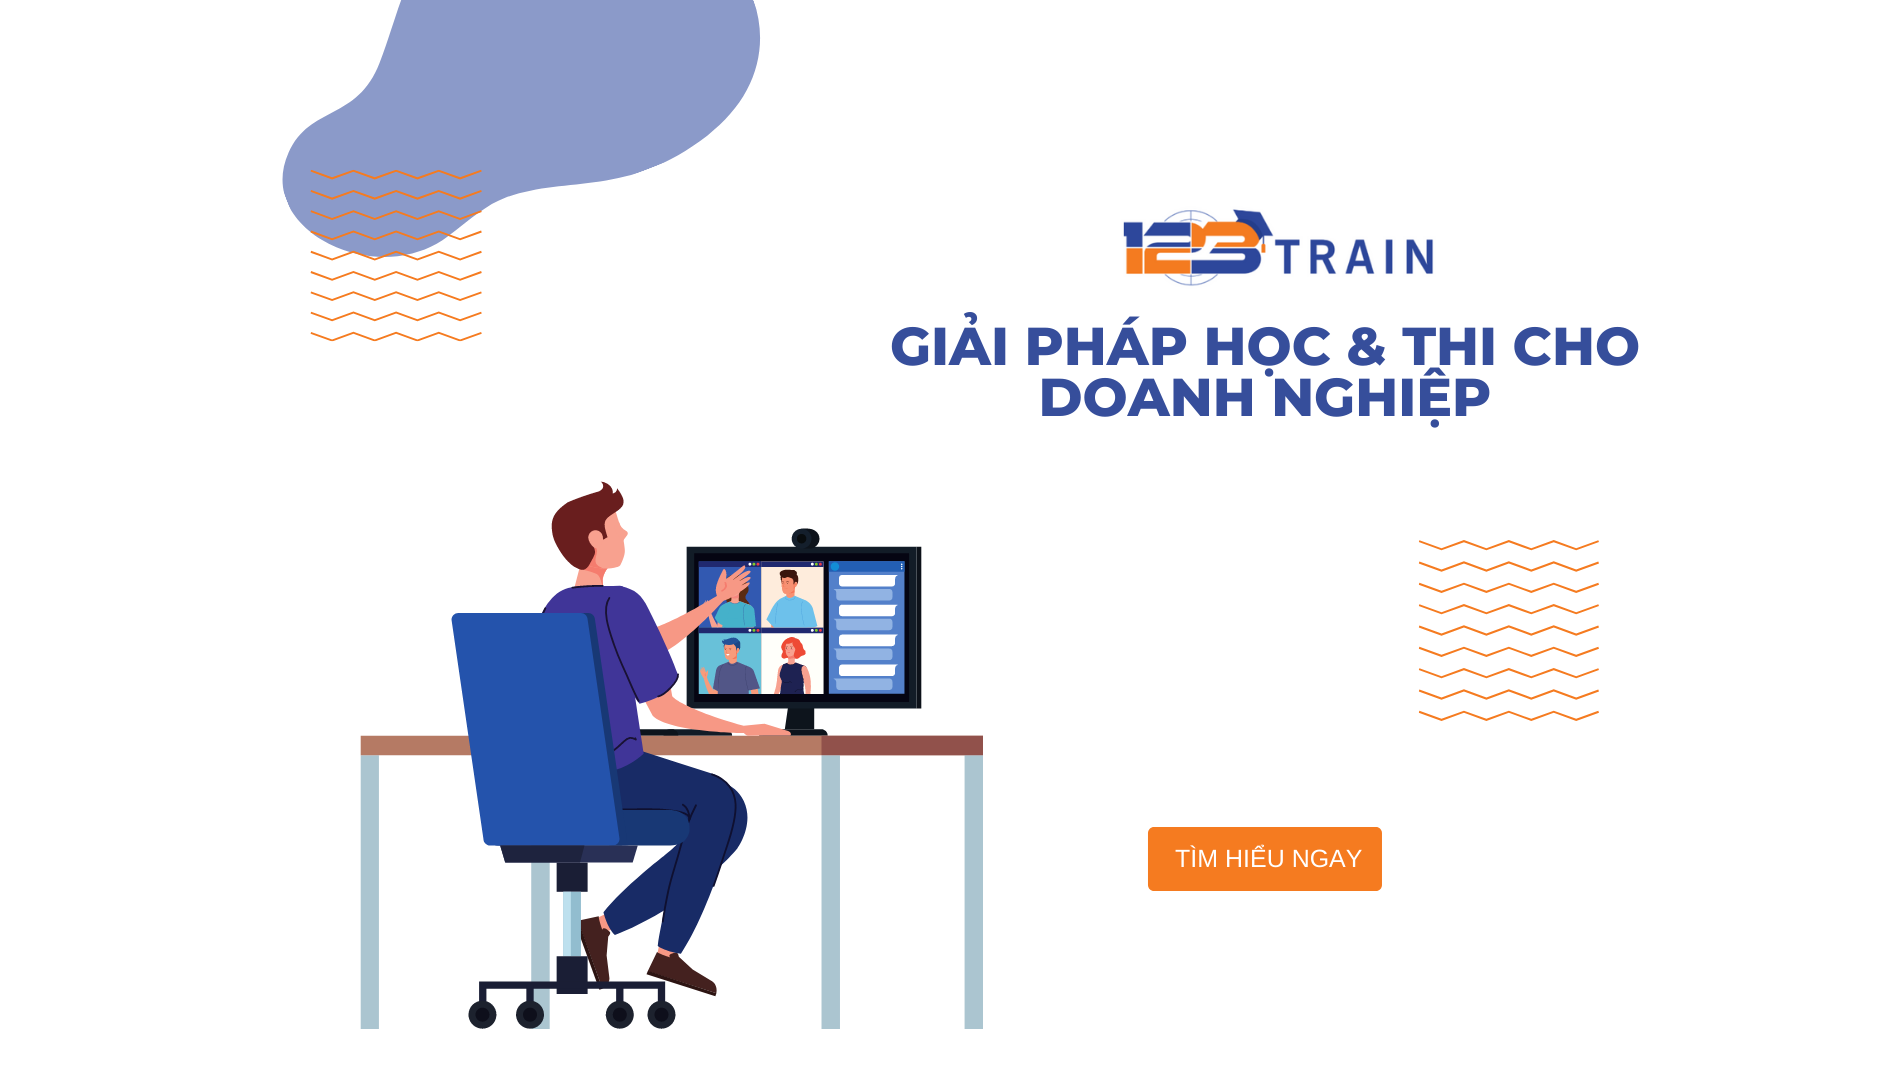 Phần mềm đào tạo nội bộ 123Train.vn- Giải pháp học & thi cho doanh nghiệp